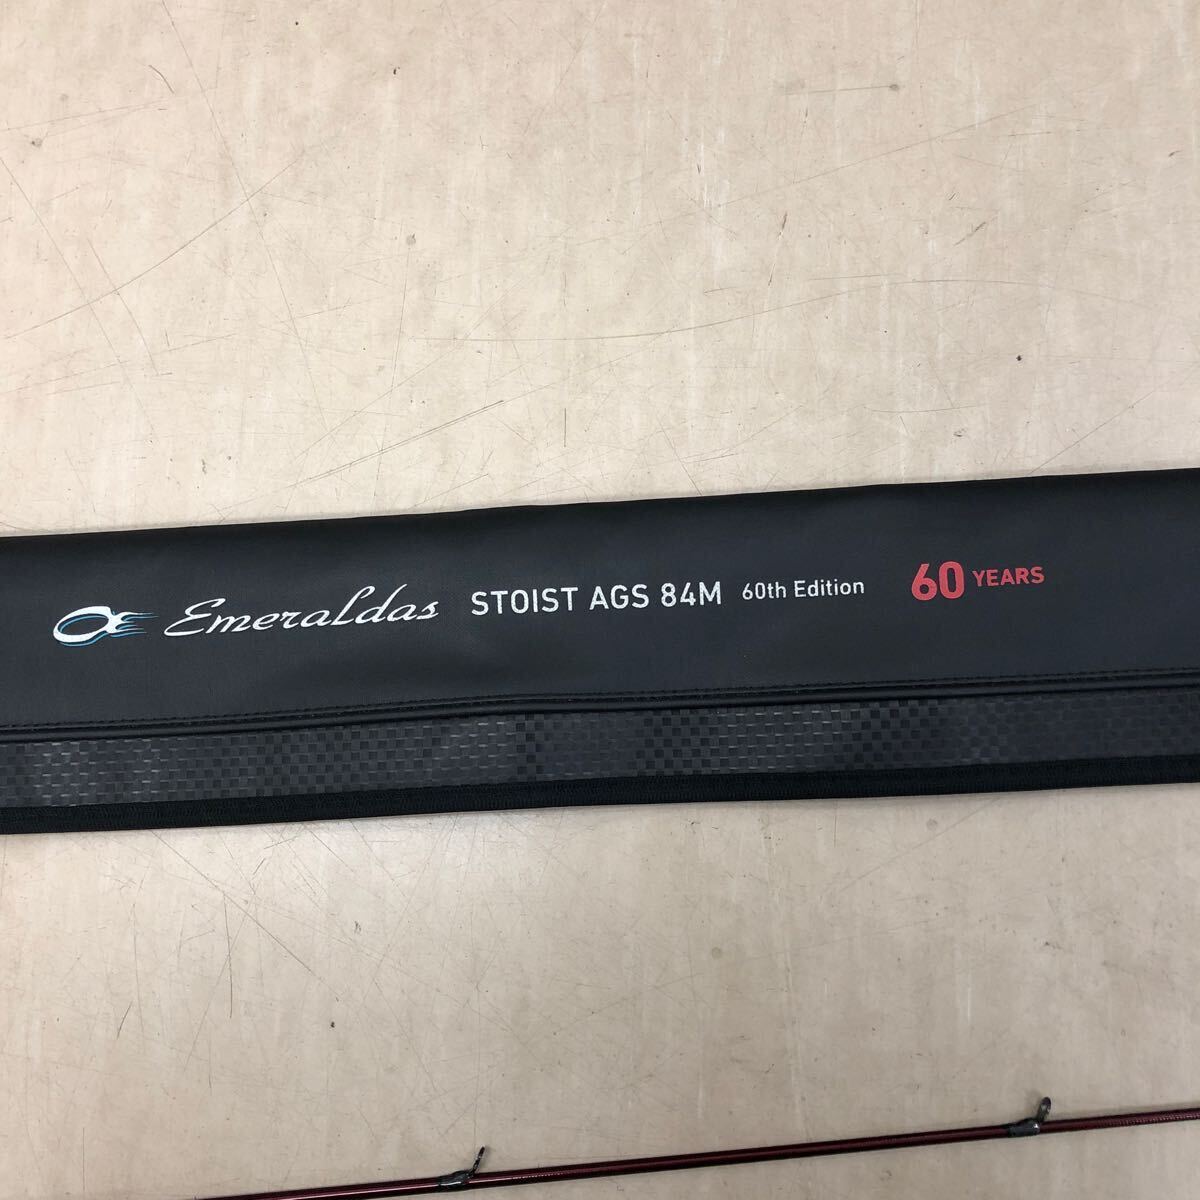 美品 ロッド ダイワ DAIWA エメラルダス ストイスト60周年記念モデル STOIST AGS 84M 60th Edition 釣竿・釣具関連